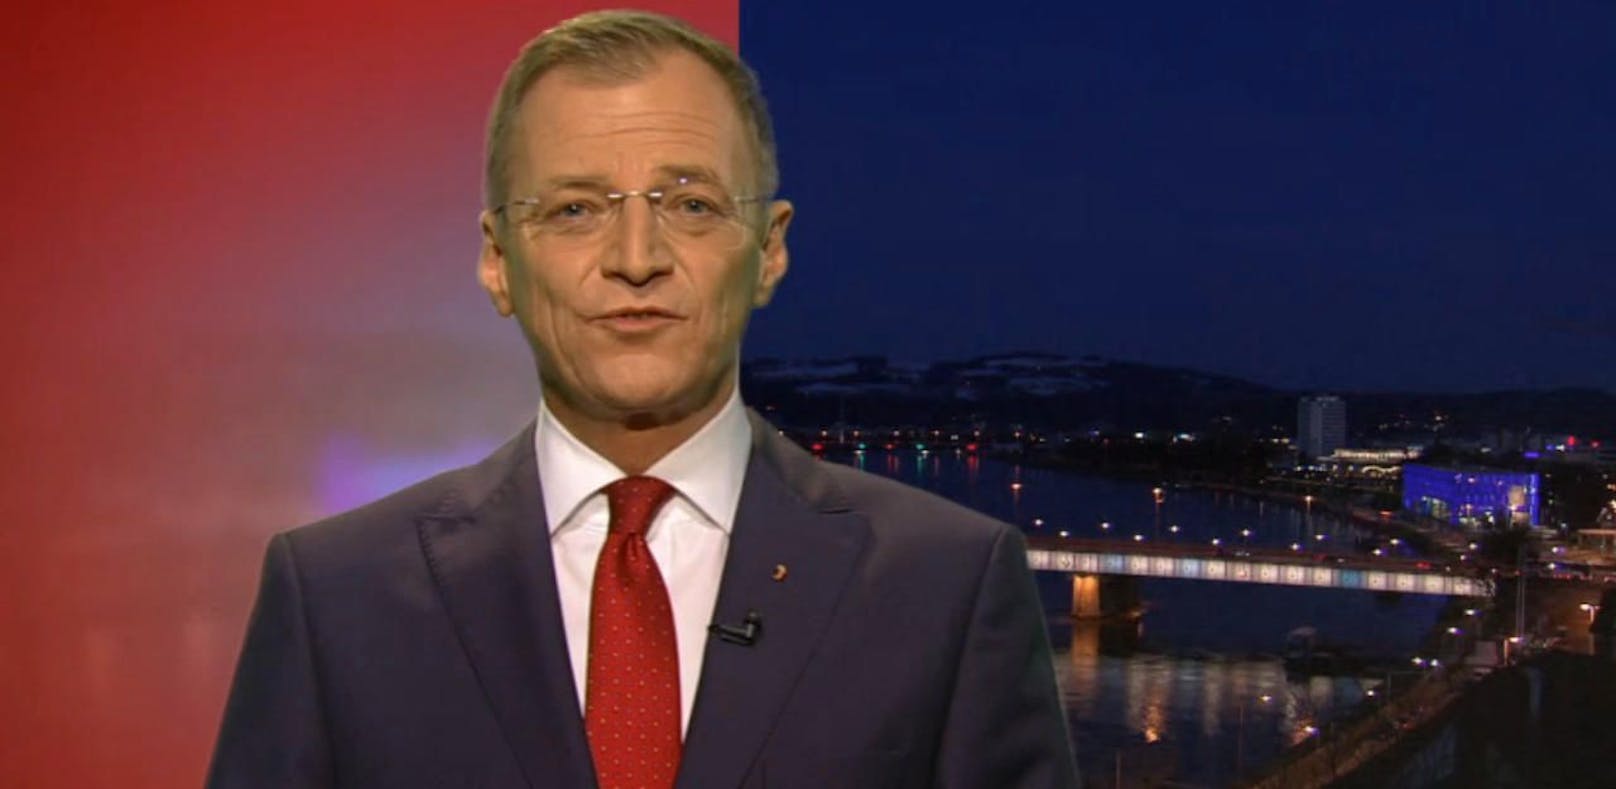 Landeshauptmann Thomas Stelzer nahm Donnerstagabend im ORF Stellung zu den Forderungen nach einer wirksamen Bekämpfung von Rechtsextremismus.